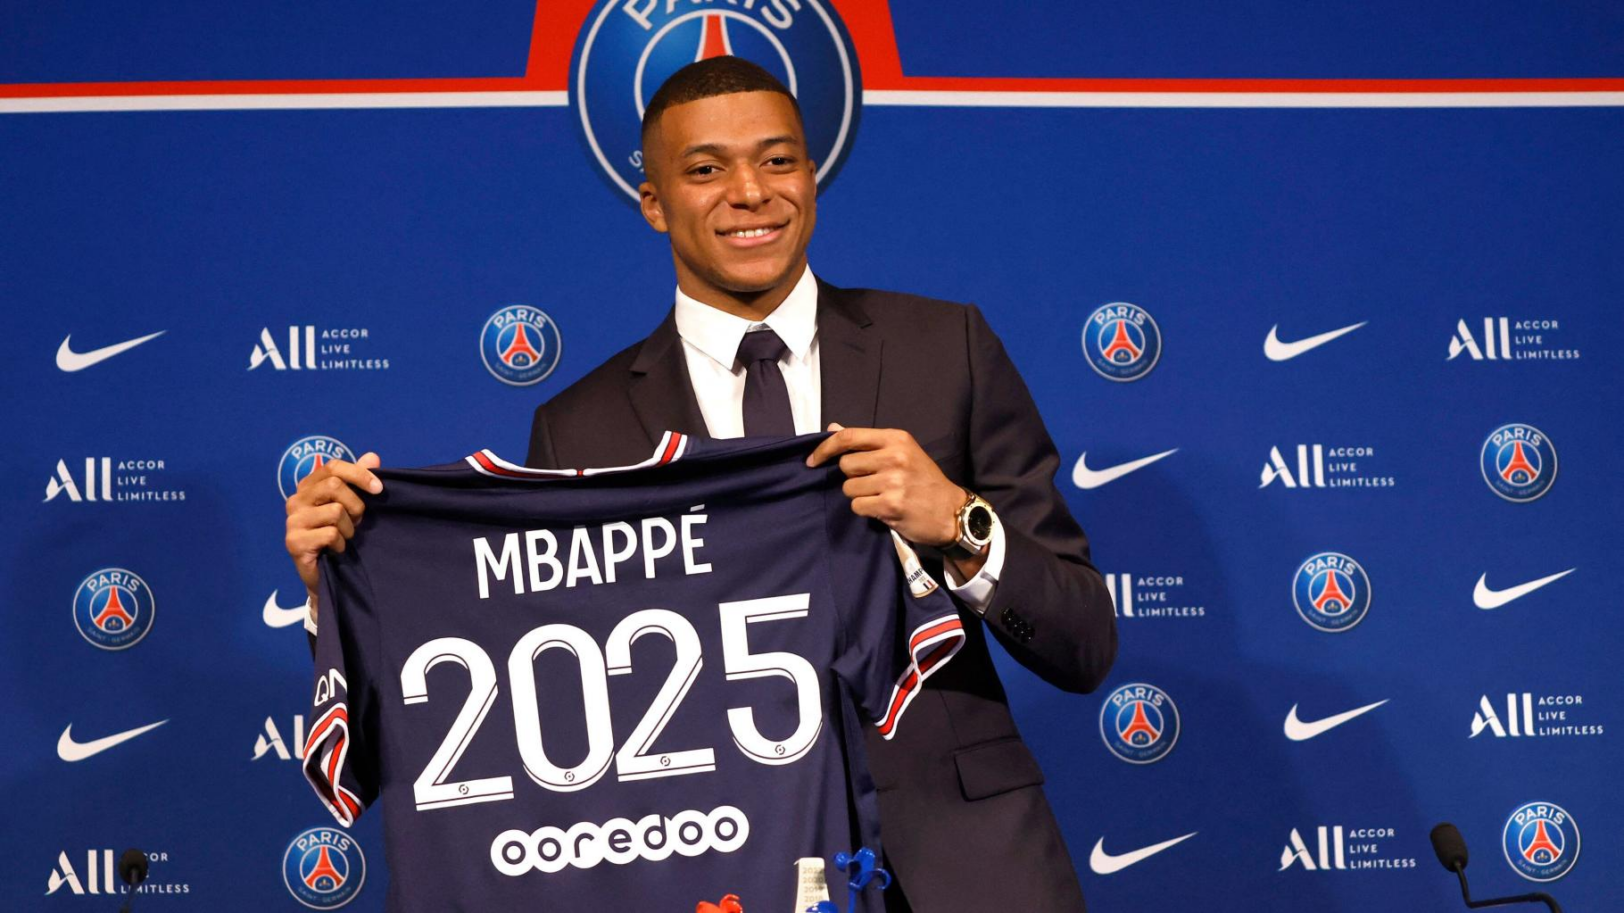 Le club avait inscrit 2025 sur le maillot de Mbappé